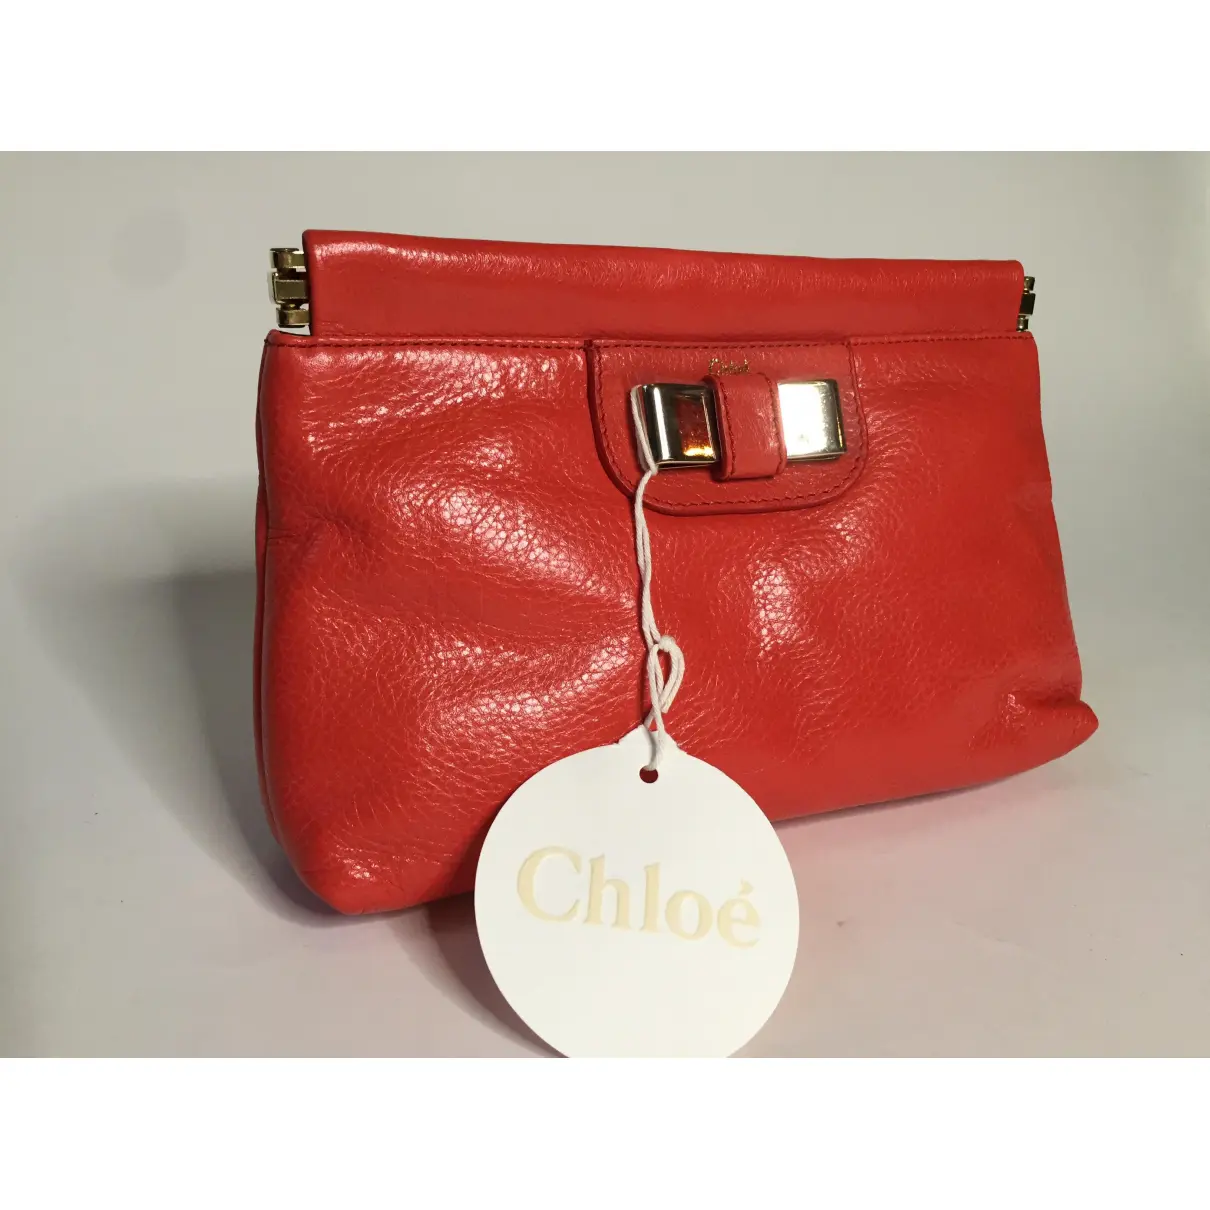 Leather clutch bag Chloé